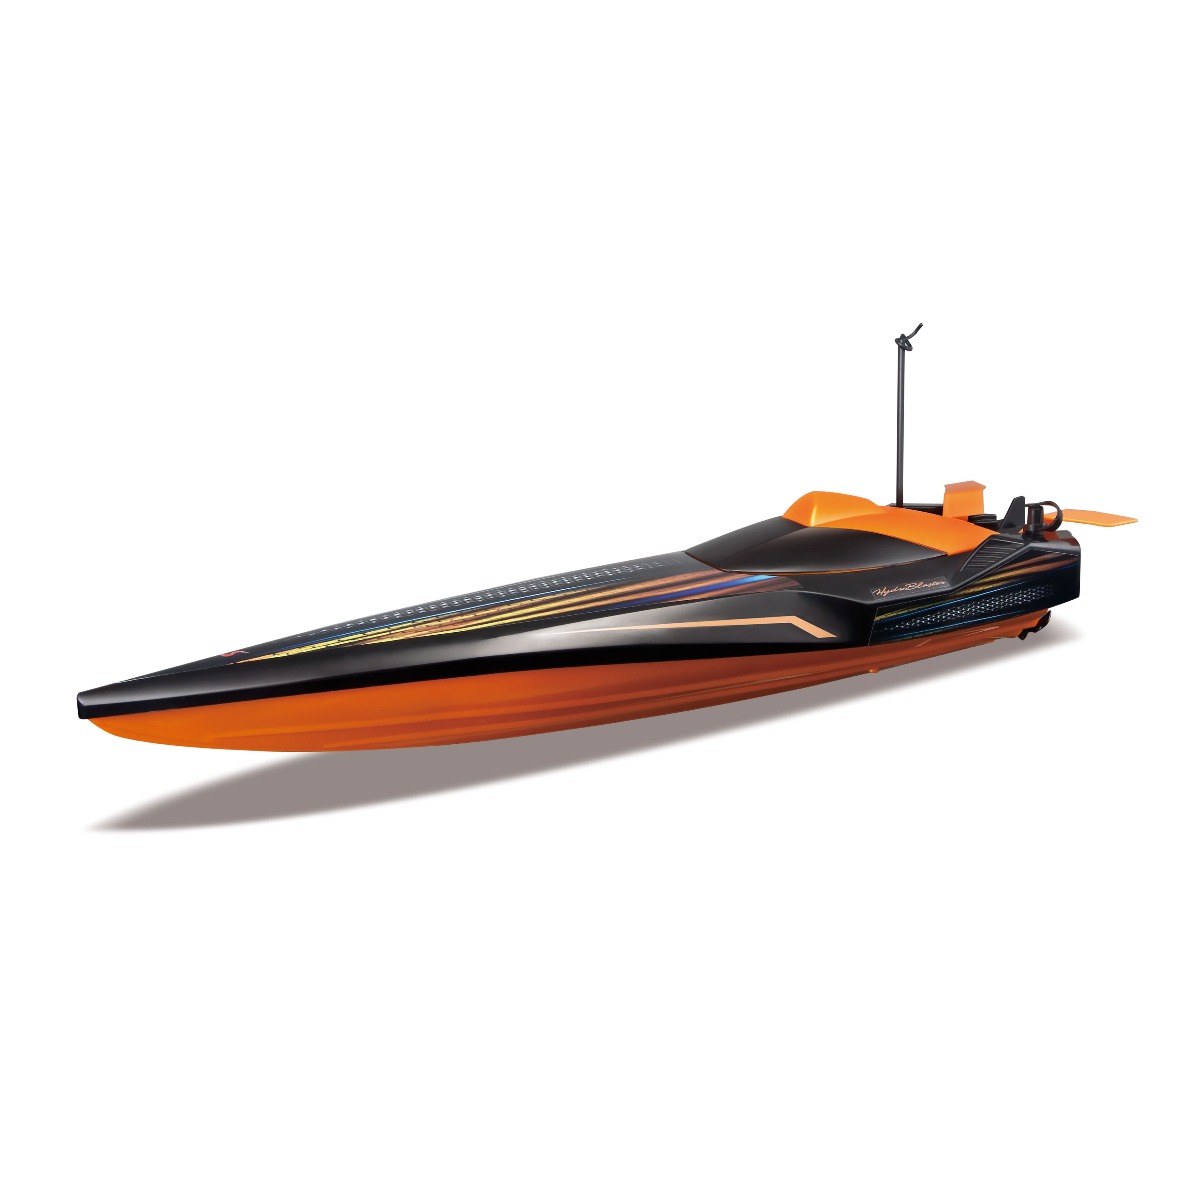 Barca cu telecomanda Maisto Tech Hydroblaster Speed, Negru/Portocaliu Maisto imagine noua